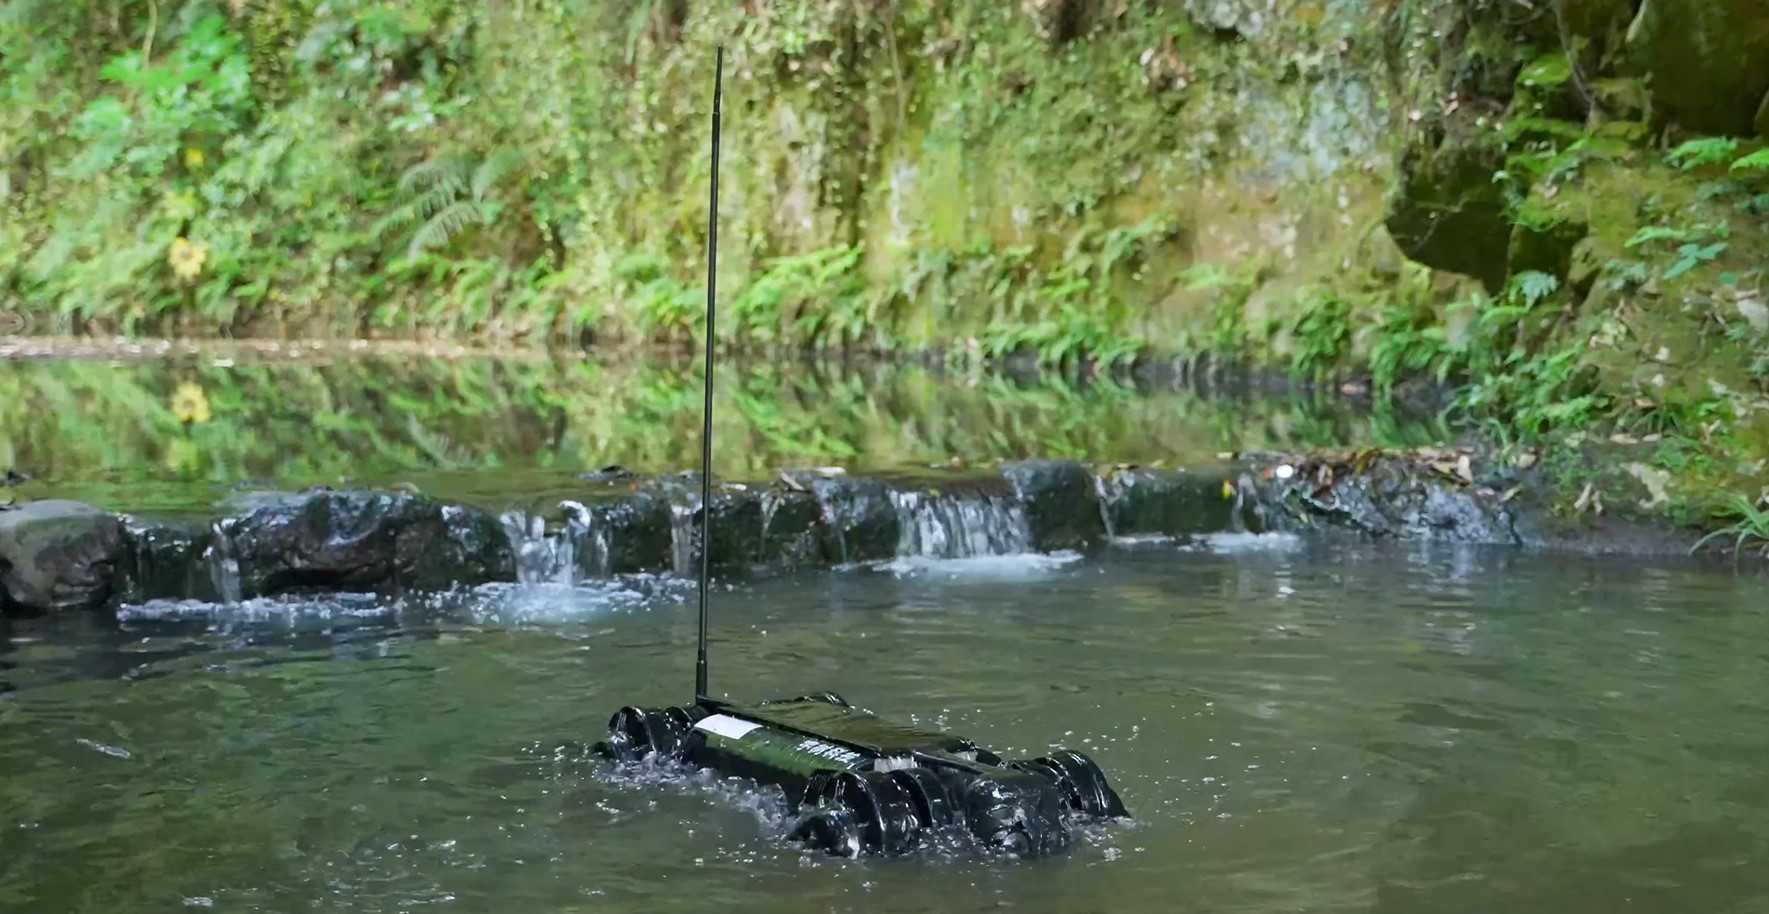 Китайский четвероногий робот Unitree Robotics B1 походил по дну бассейна и покатал человека